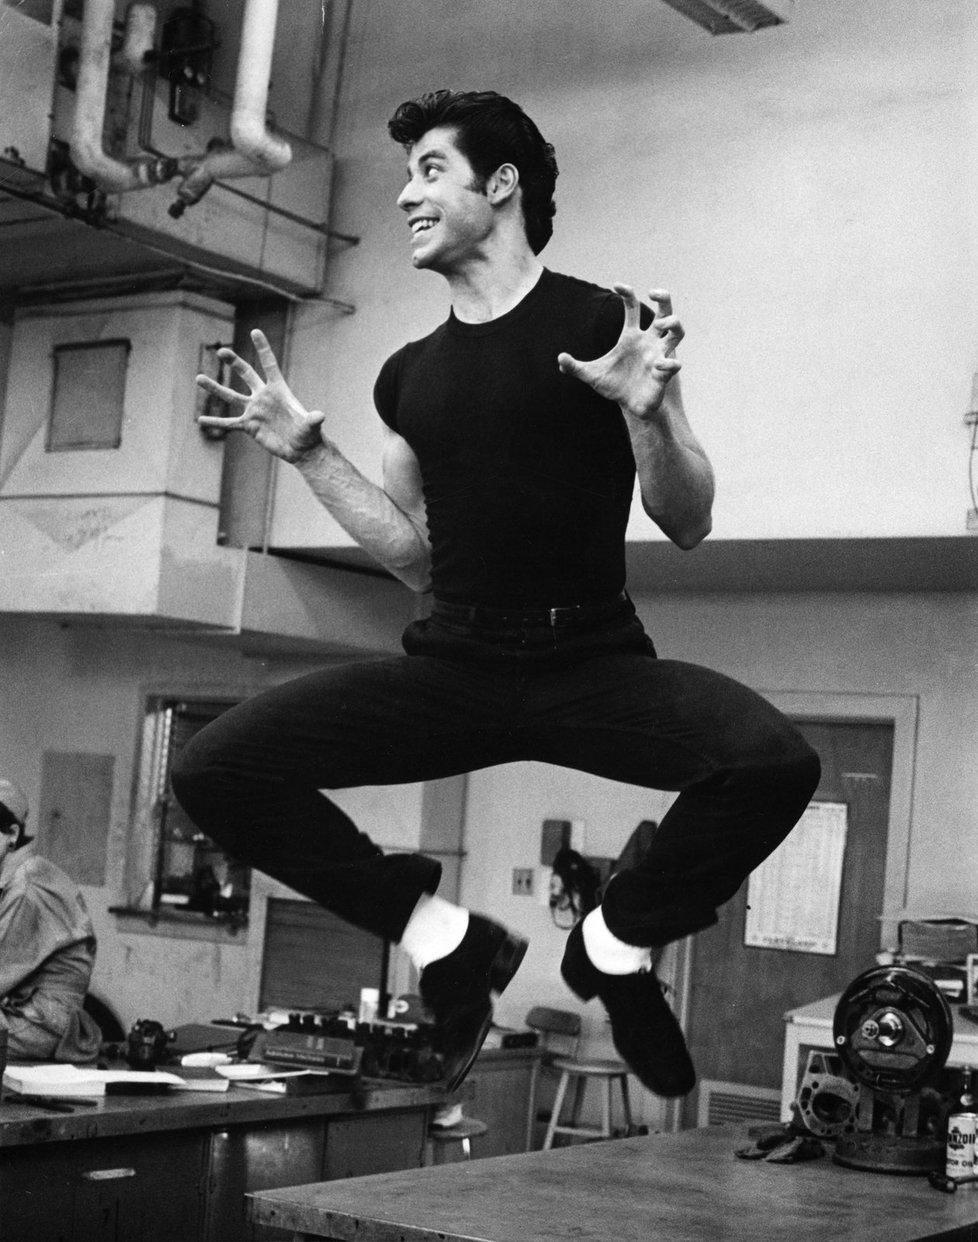 John Travolta je nejen skvělý herec, ale zamlada válel i v tanci